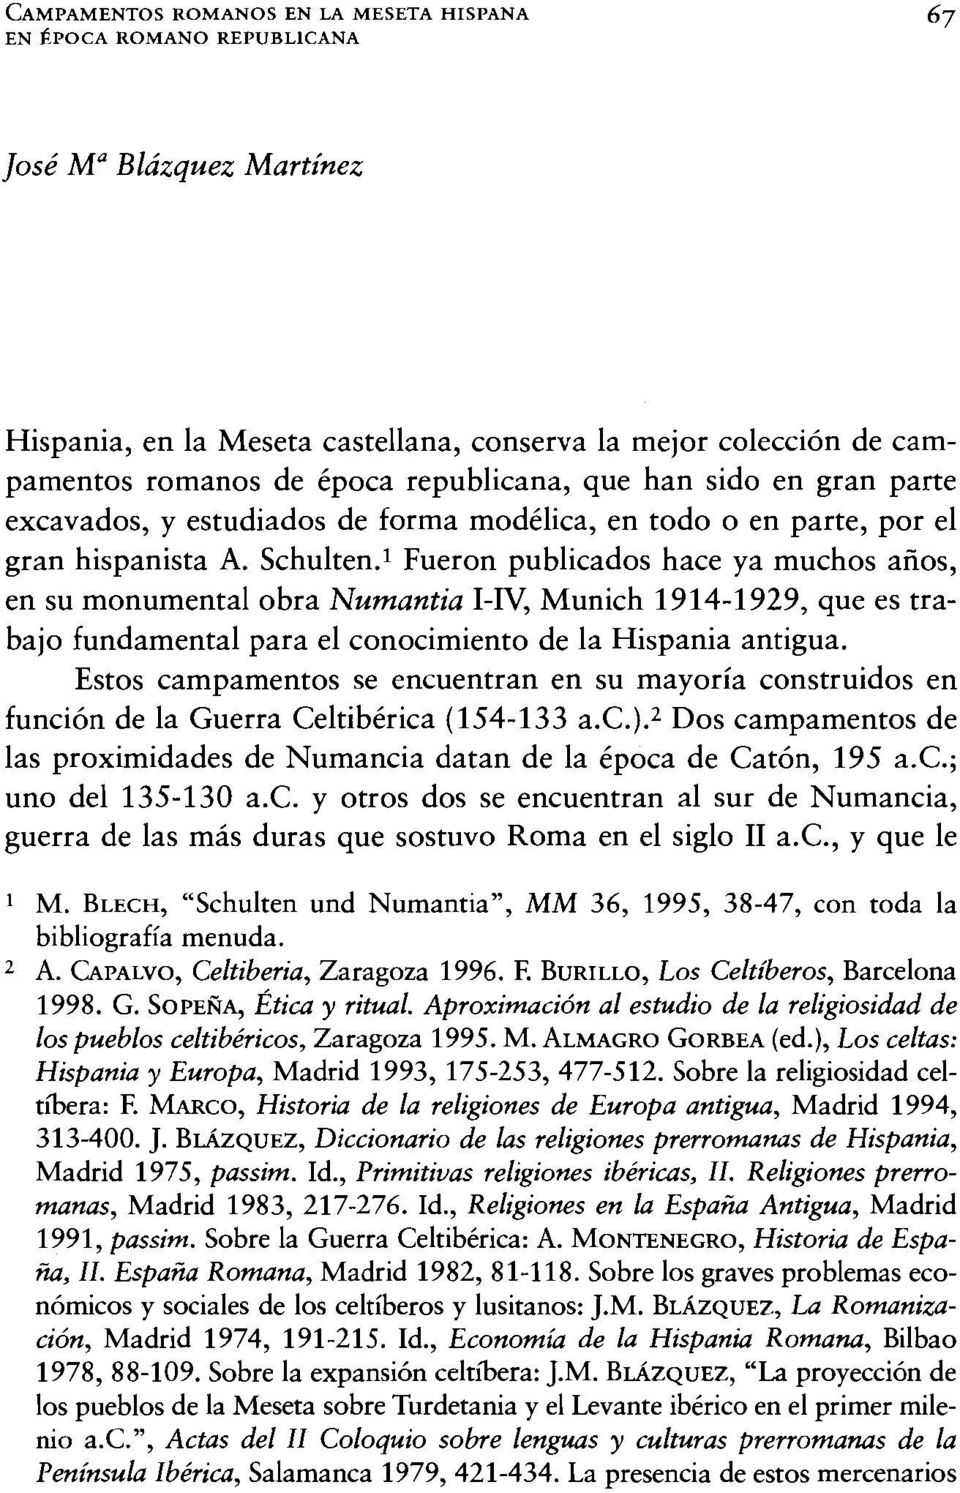 l Fueron publicados hace ya muchos años, en su monumental obra Numantia MV, Munich 1914-1929, que es trabajo fundamental para el conocimiento de la Hispania antigua.